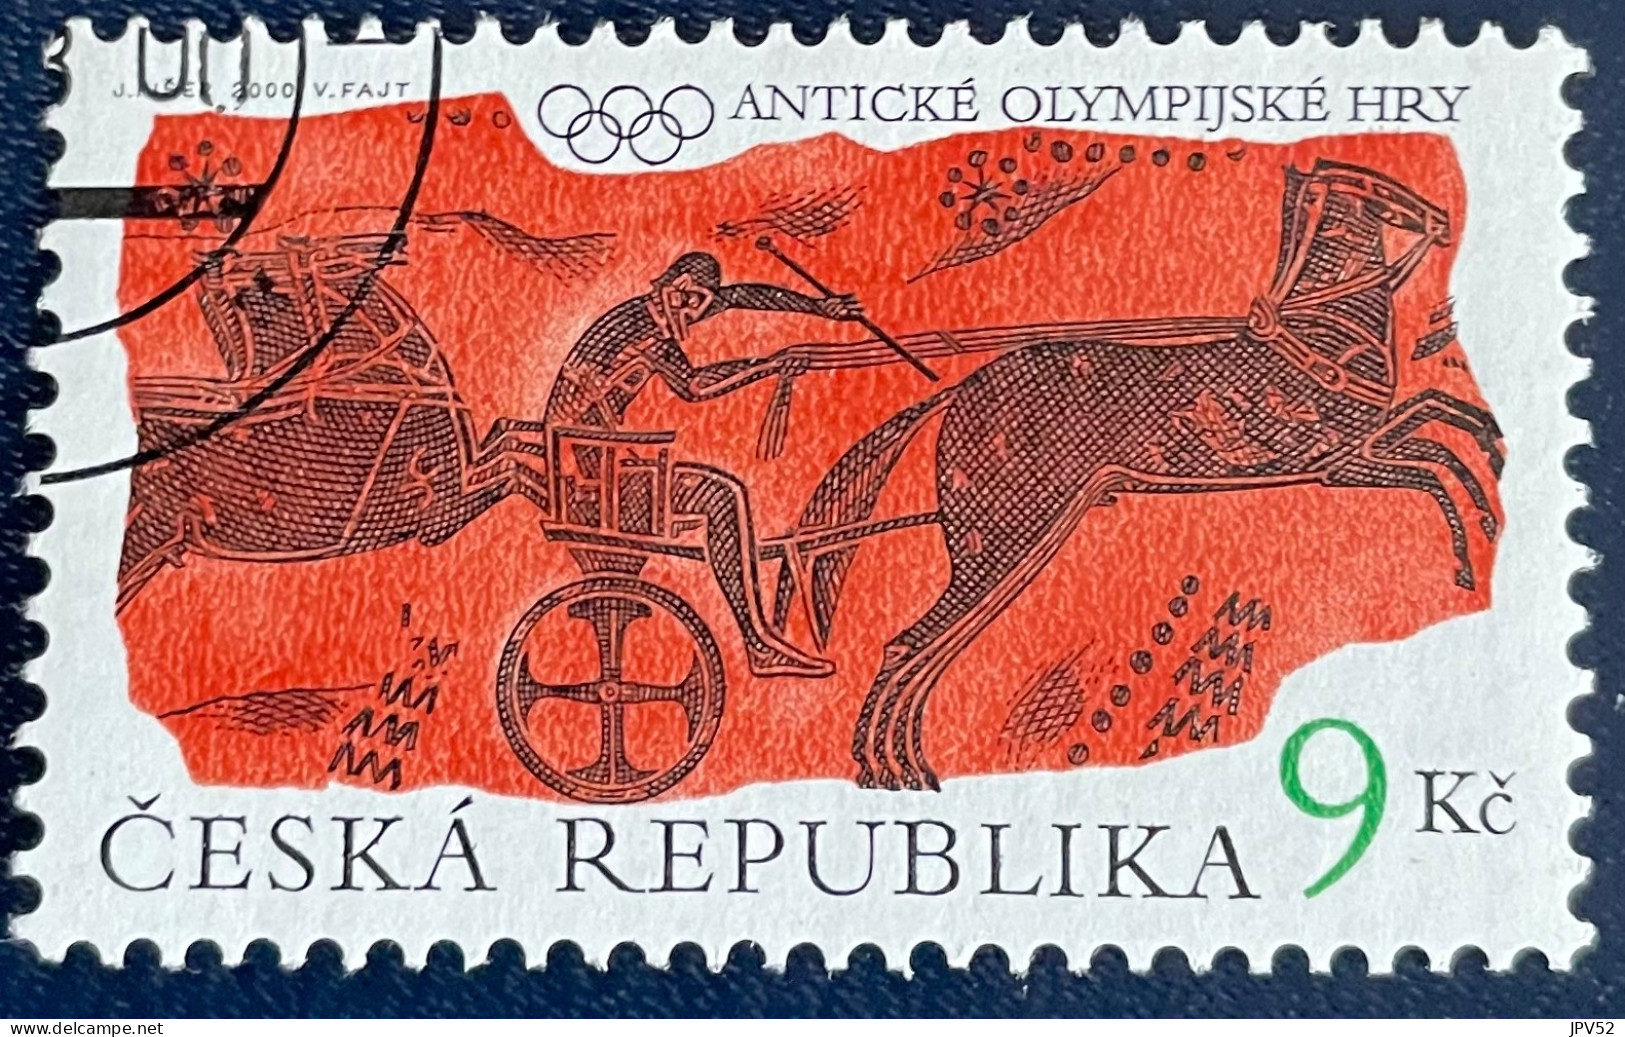 Ceska Republika - Tsjechië - C4/6 - 2000 - (°)used - Michel 268 - Oude Olympische Spelen - Oblitérés